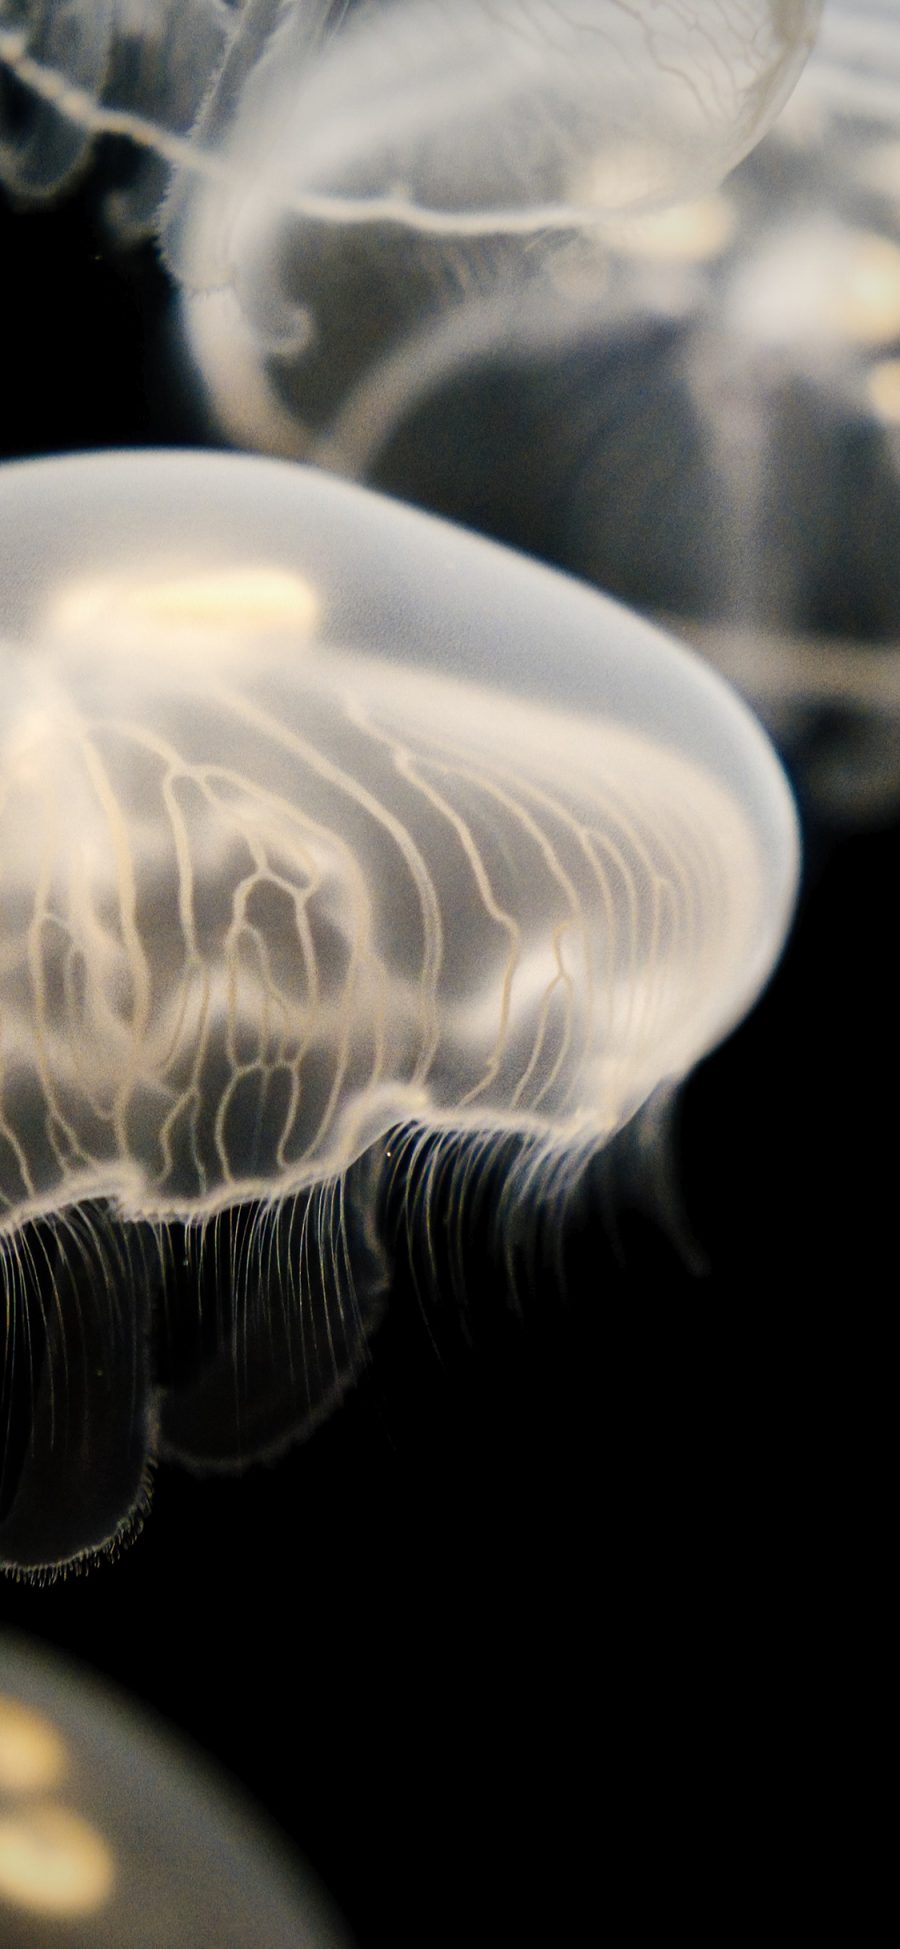 [2436×1125]海洋生物 浮游 水母 海蜇 苹果手机壁纸图片